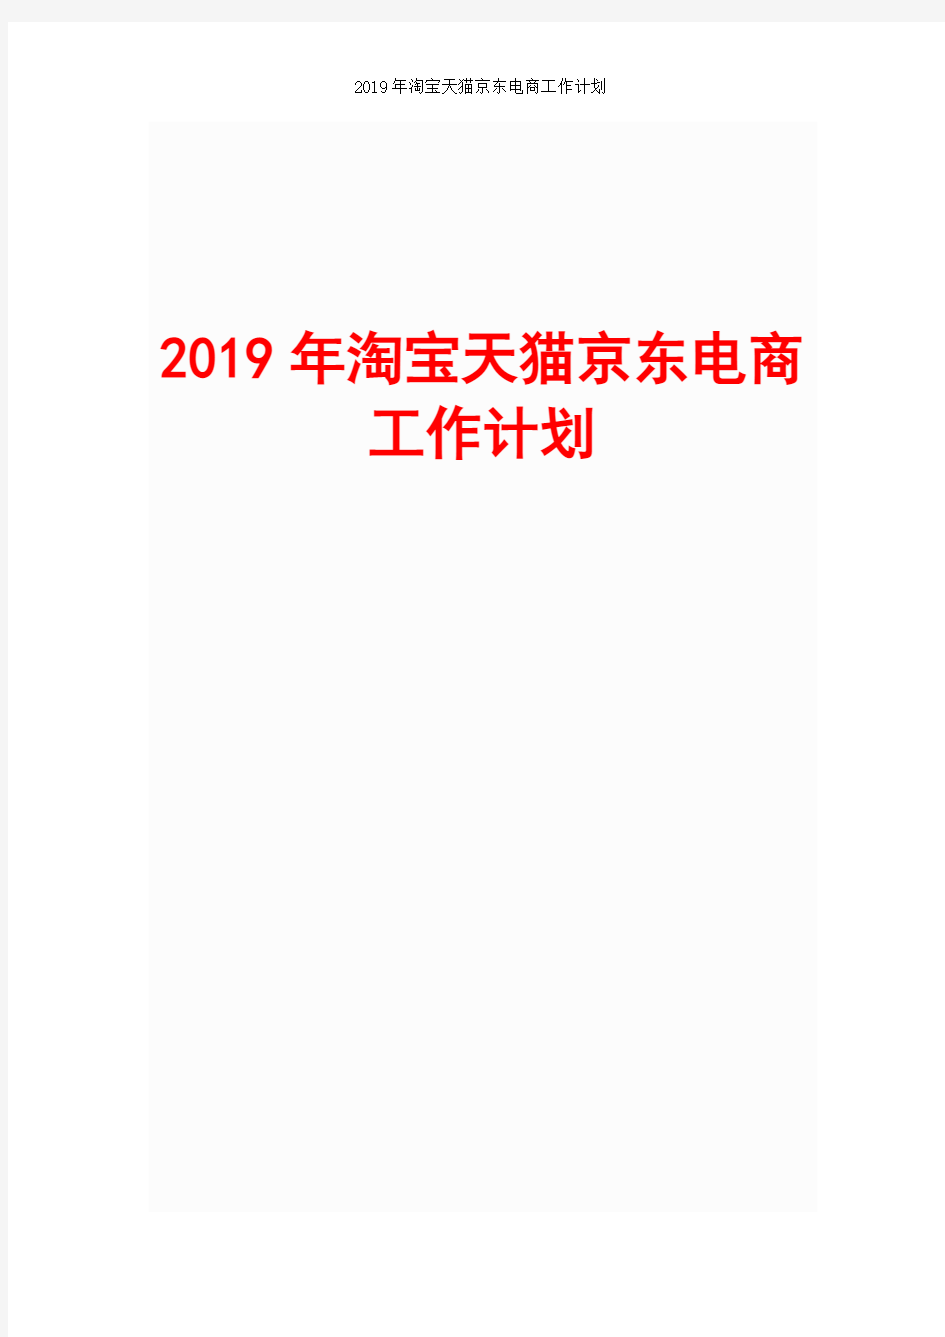 2019年淘宝天猫京东电商工作计划